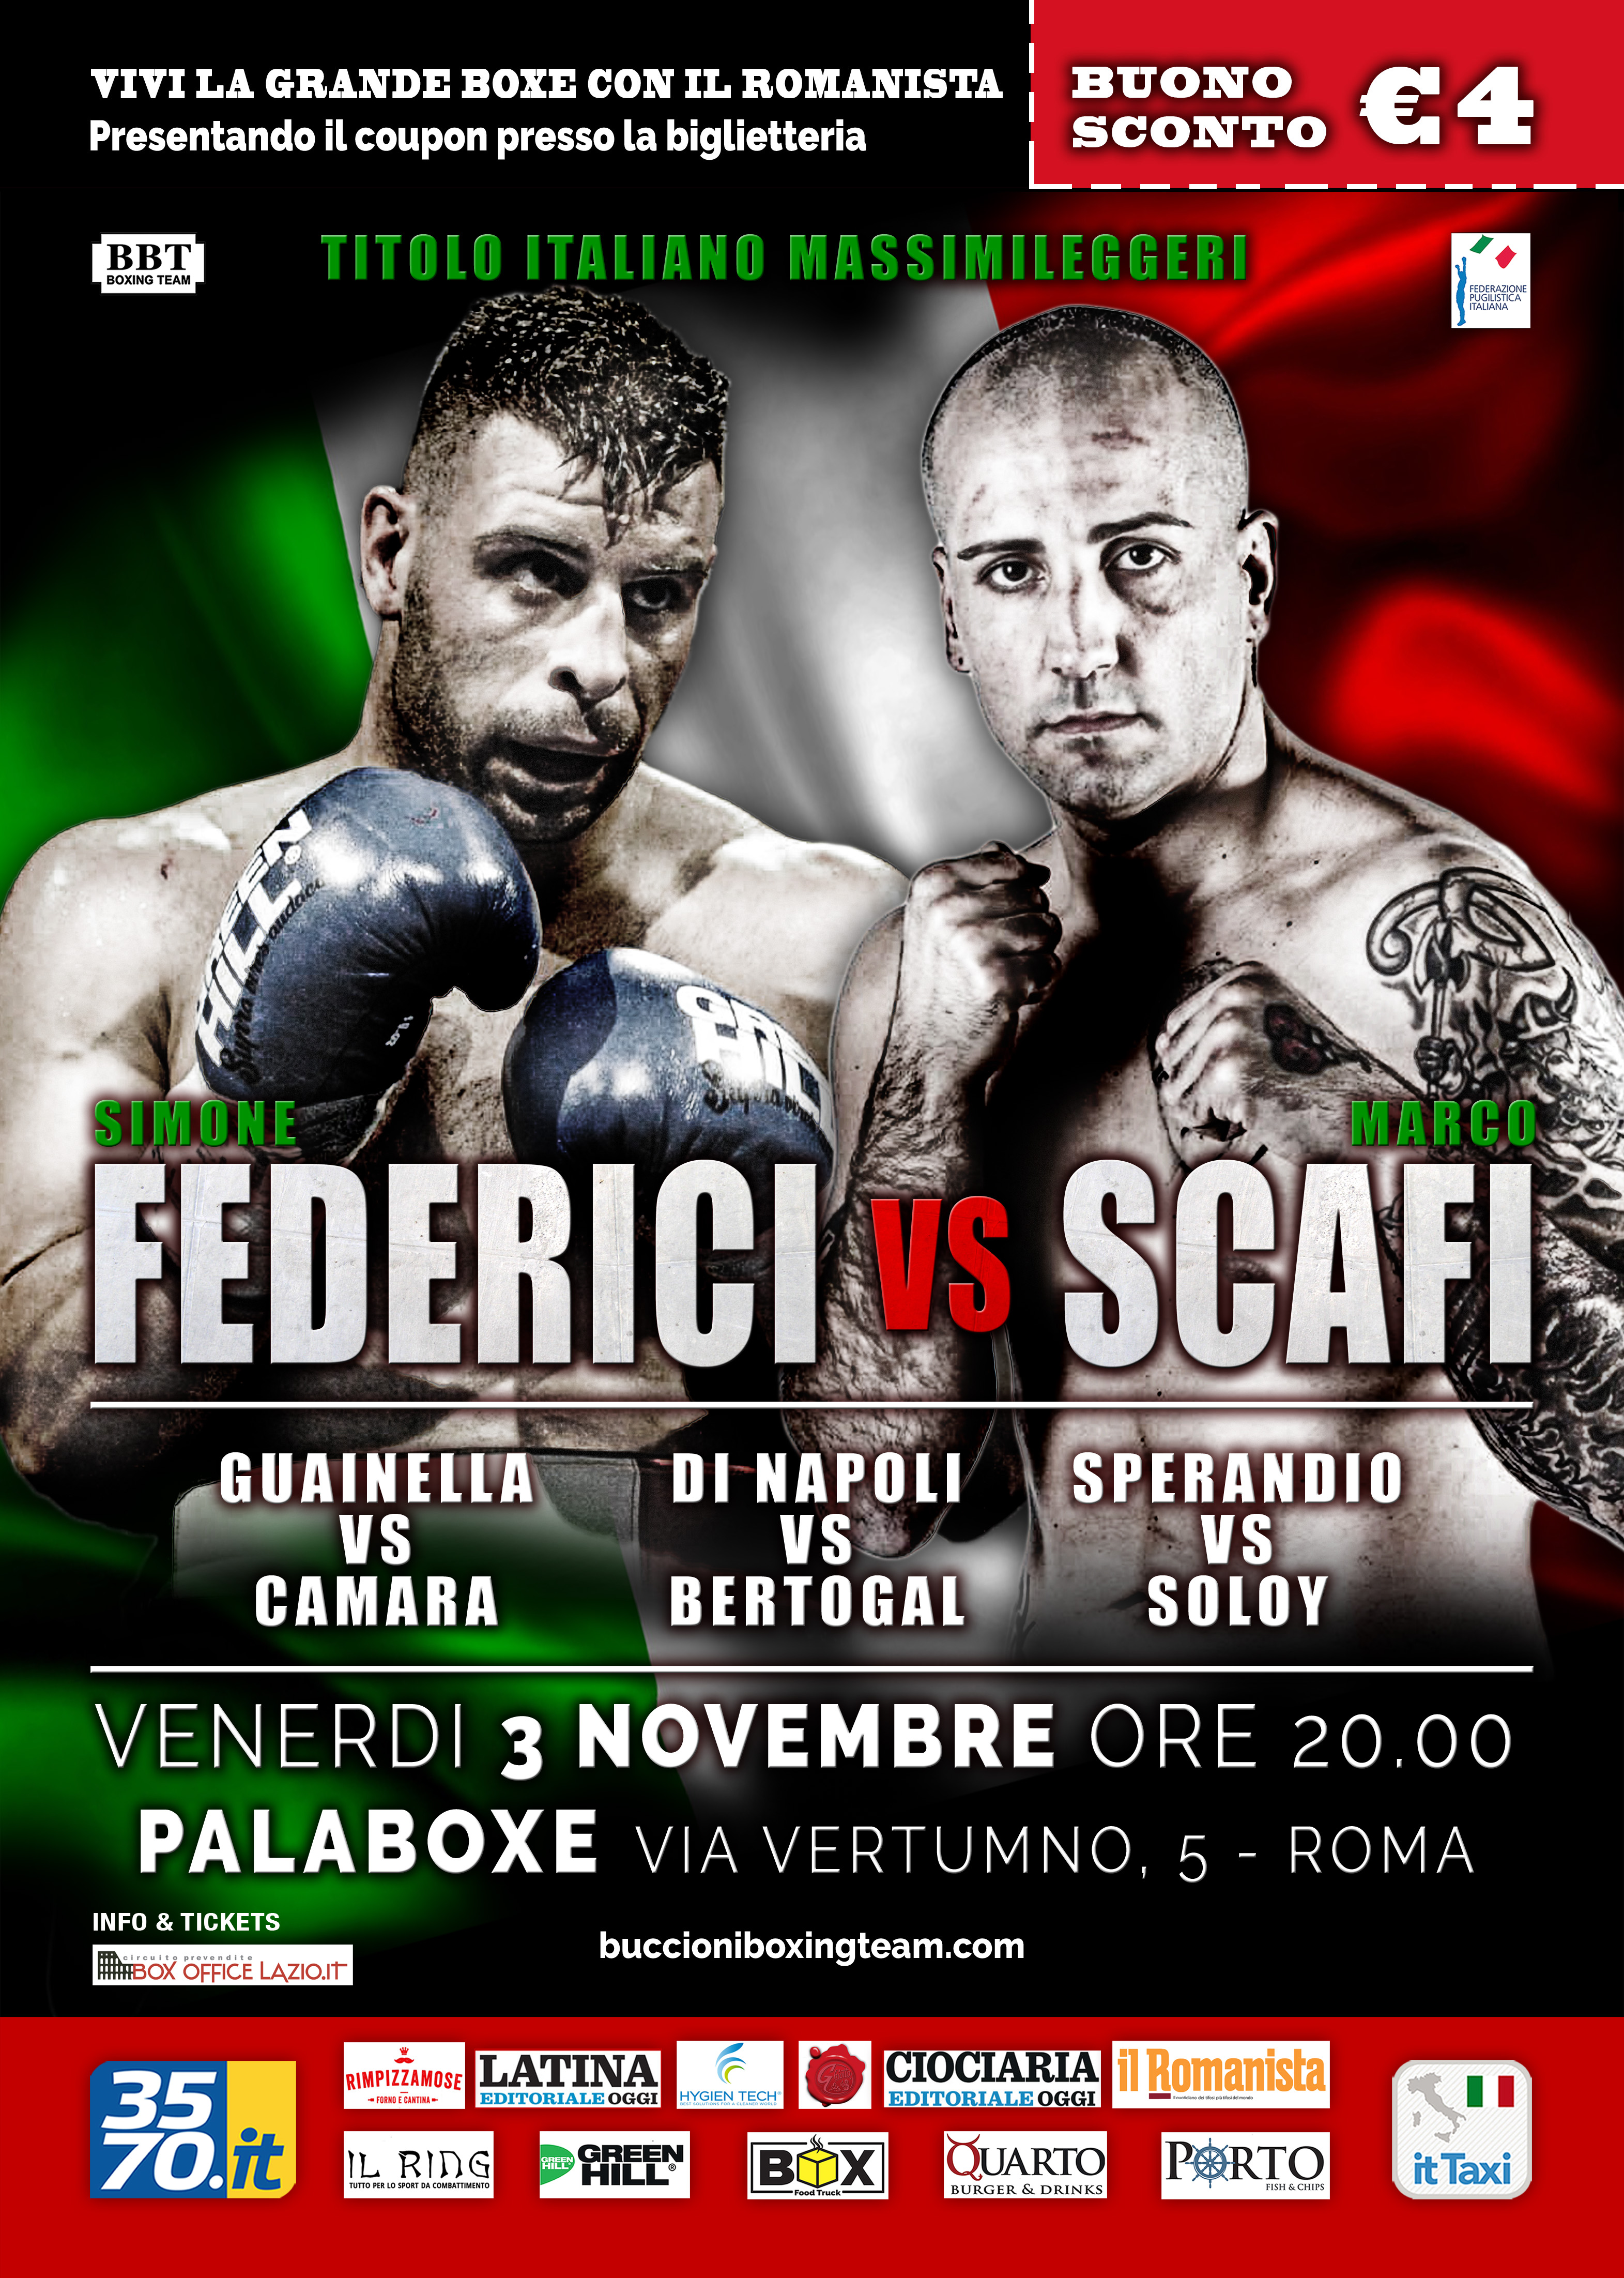 Il 3 Novembre a Roma Titolo Italiano Cruiser Federici vs Scafi - Vivi la Grande Boxe con Il Romanista #ProBoxing 